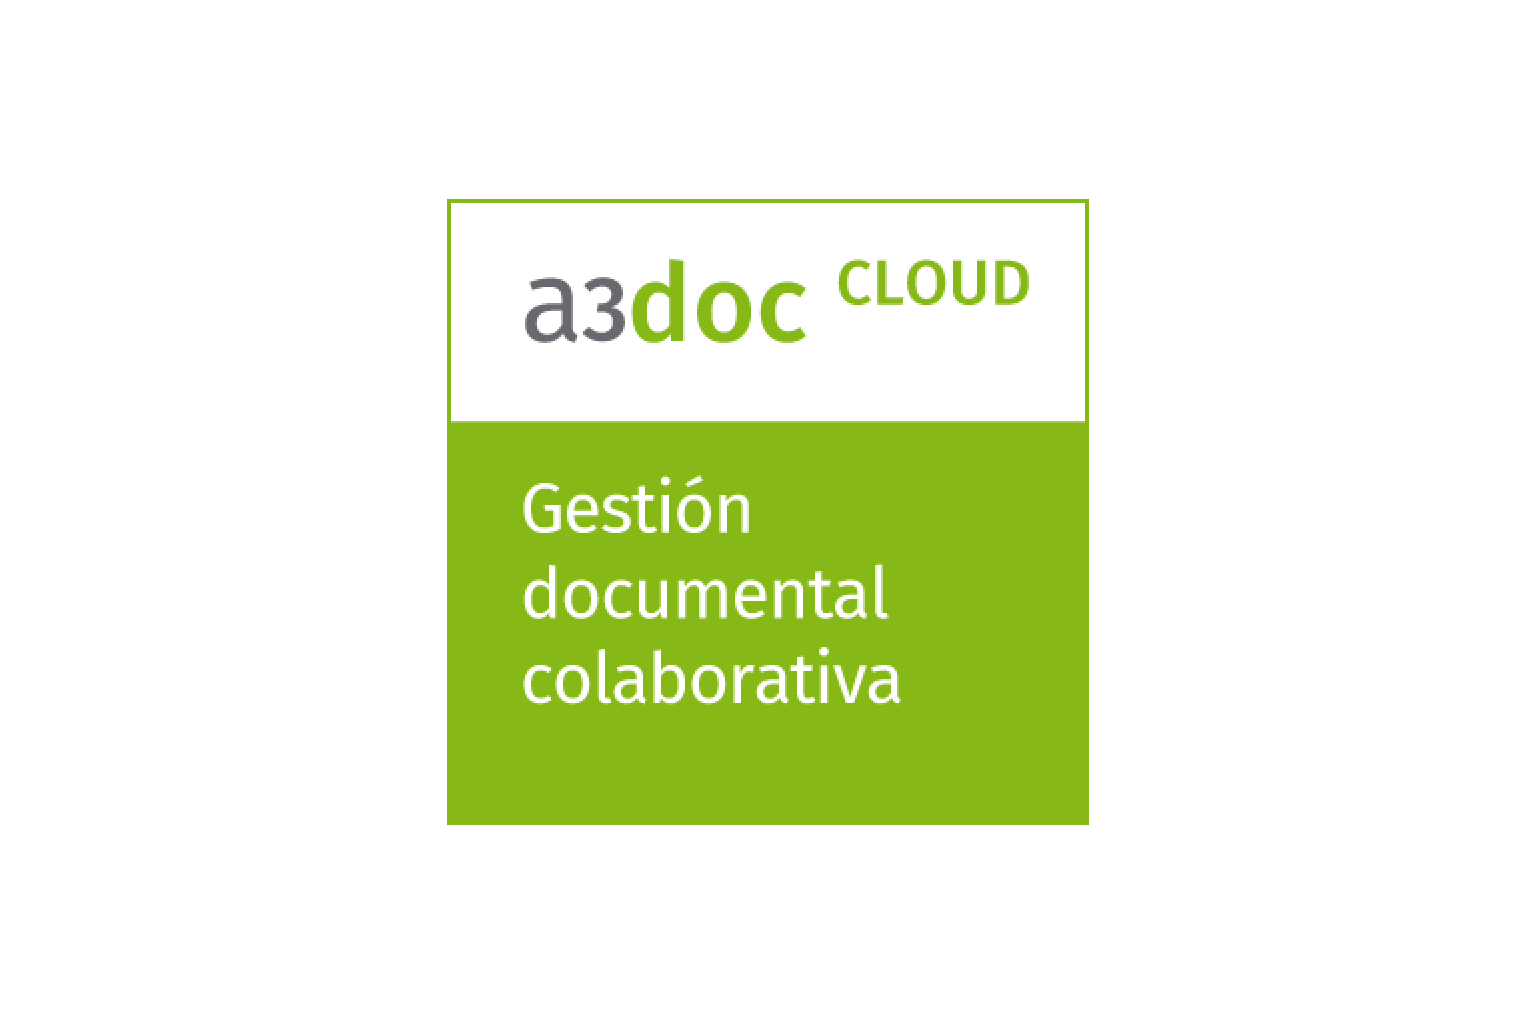 a3doc_cloud